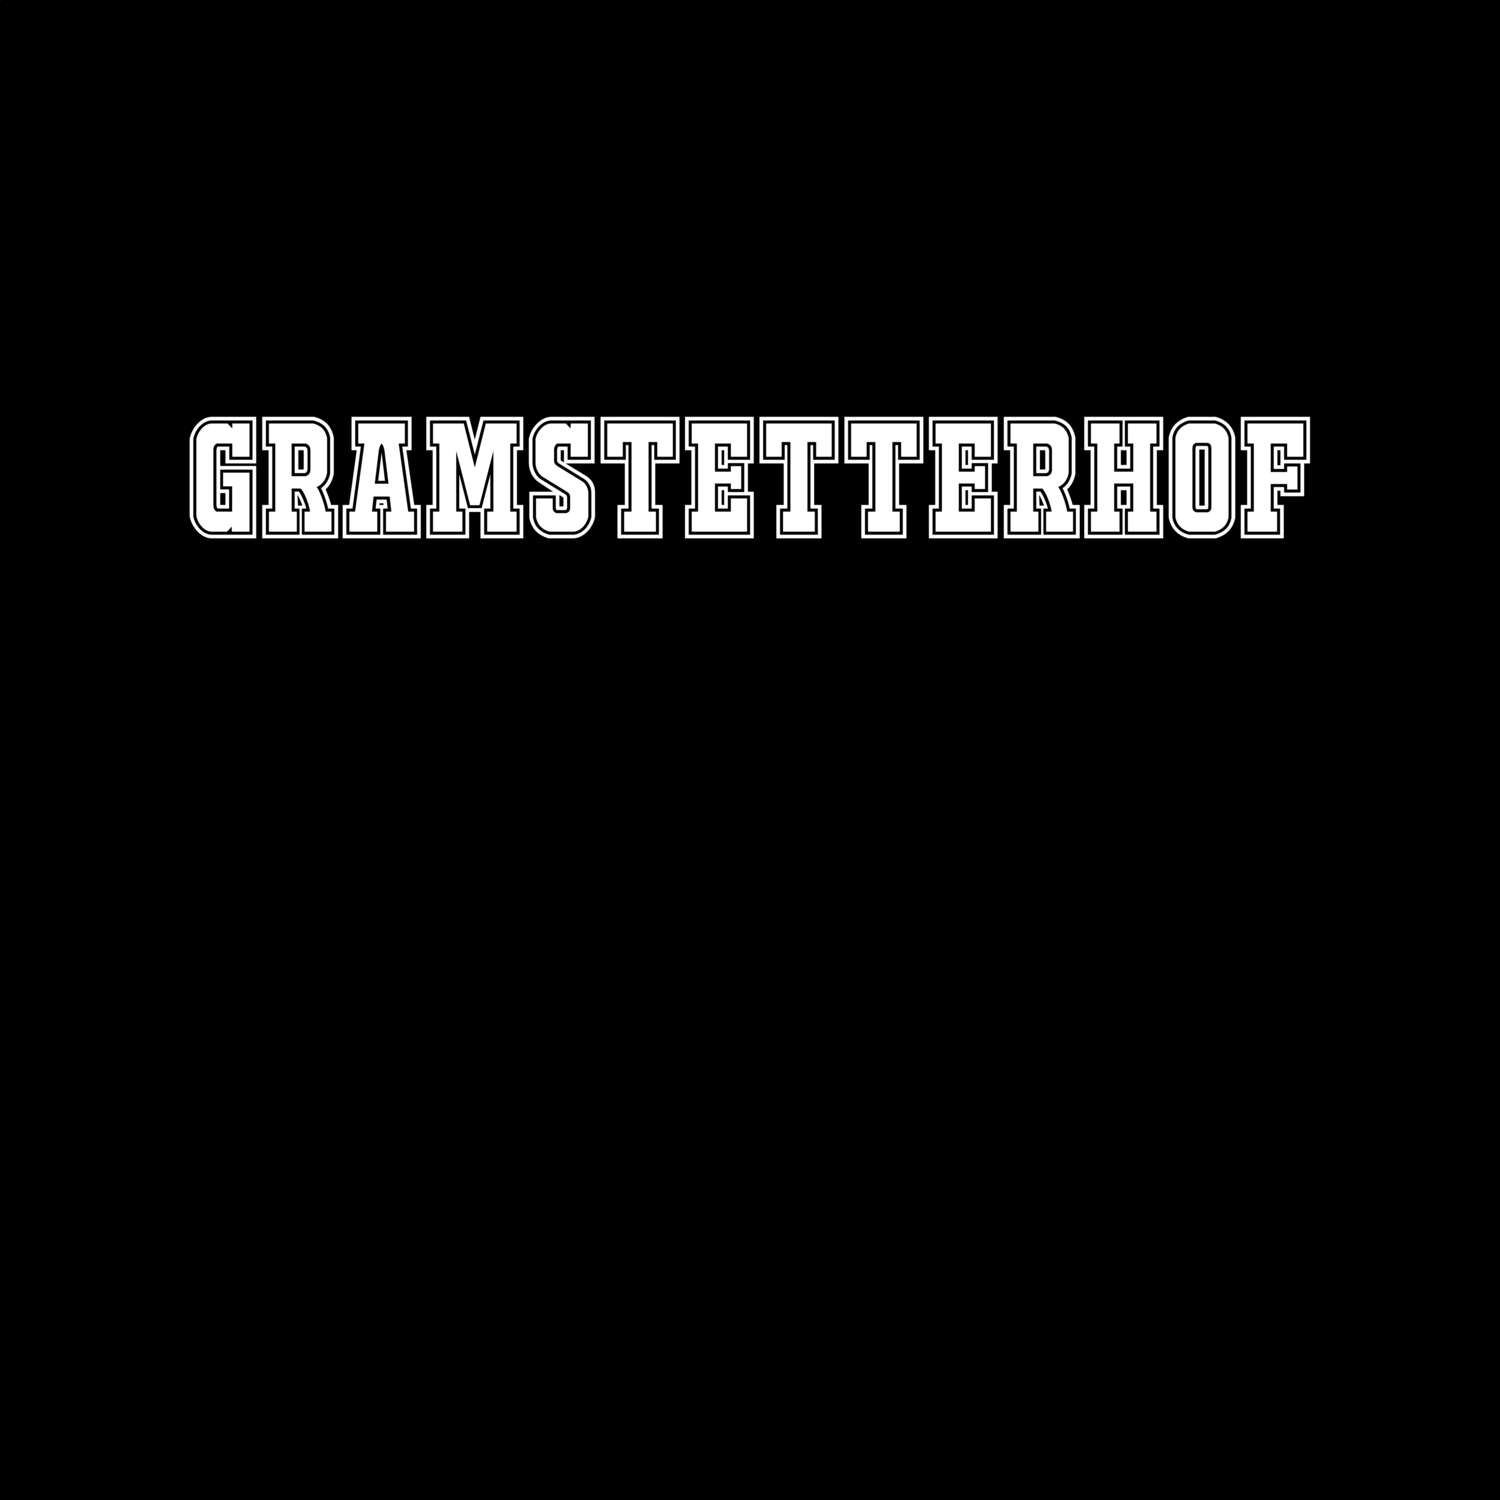 Gramstetterhof T-Shirt »Classic«